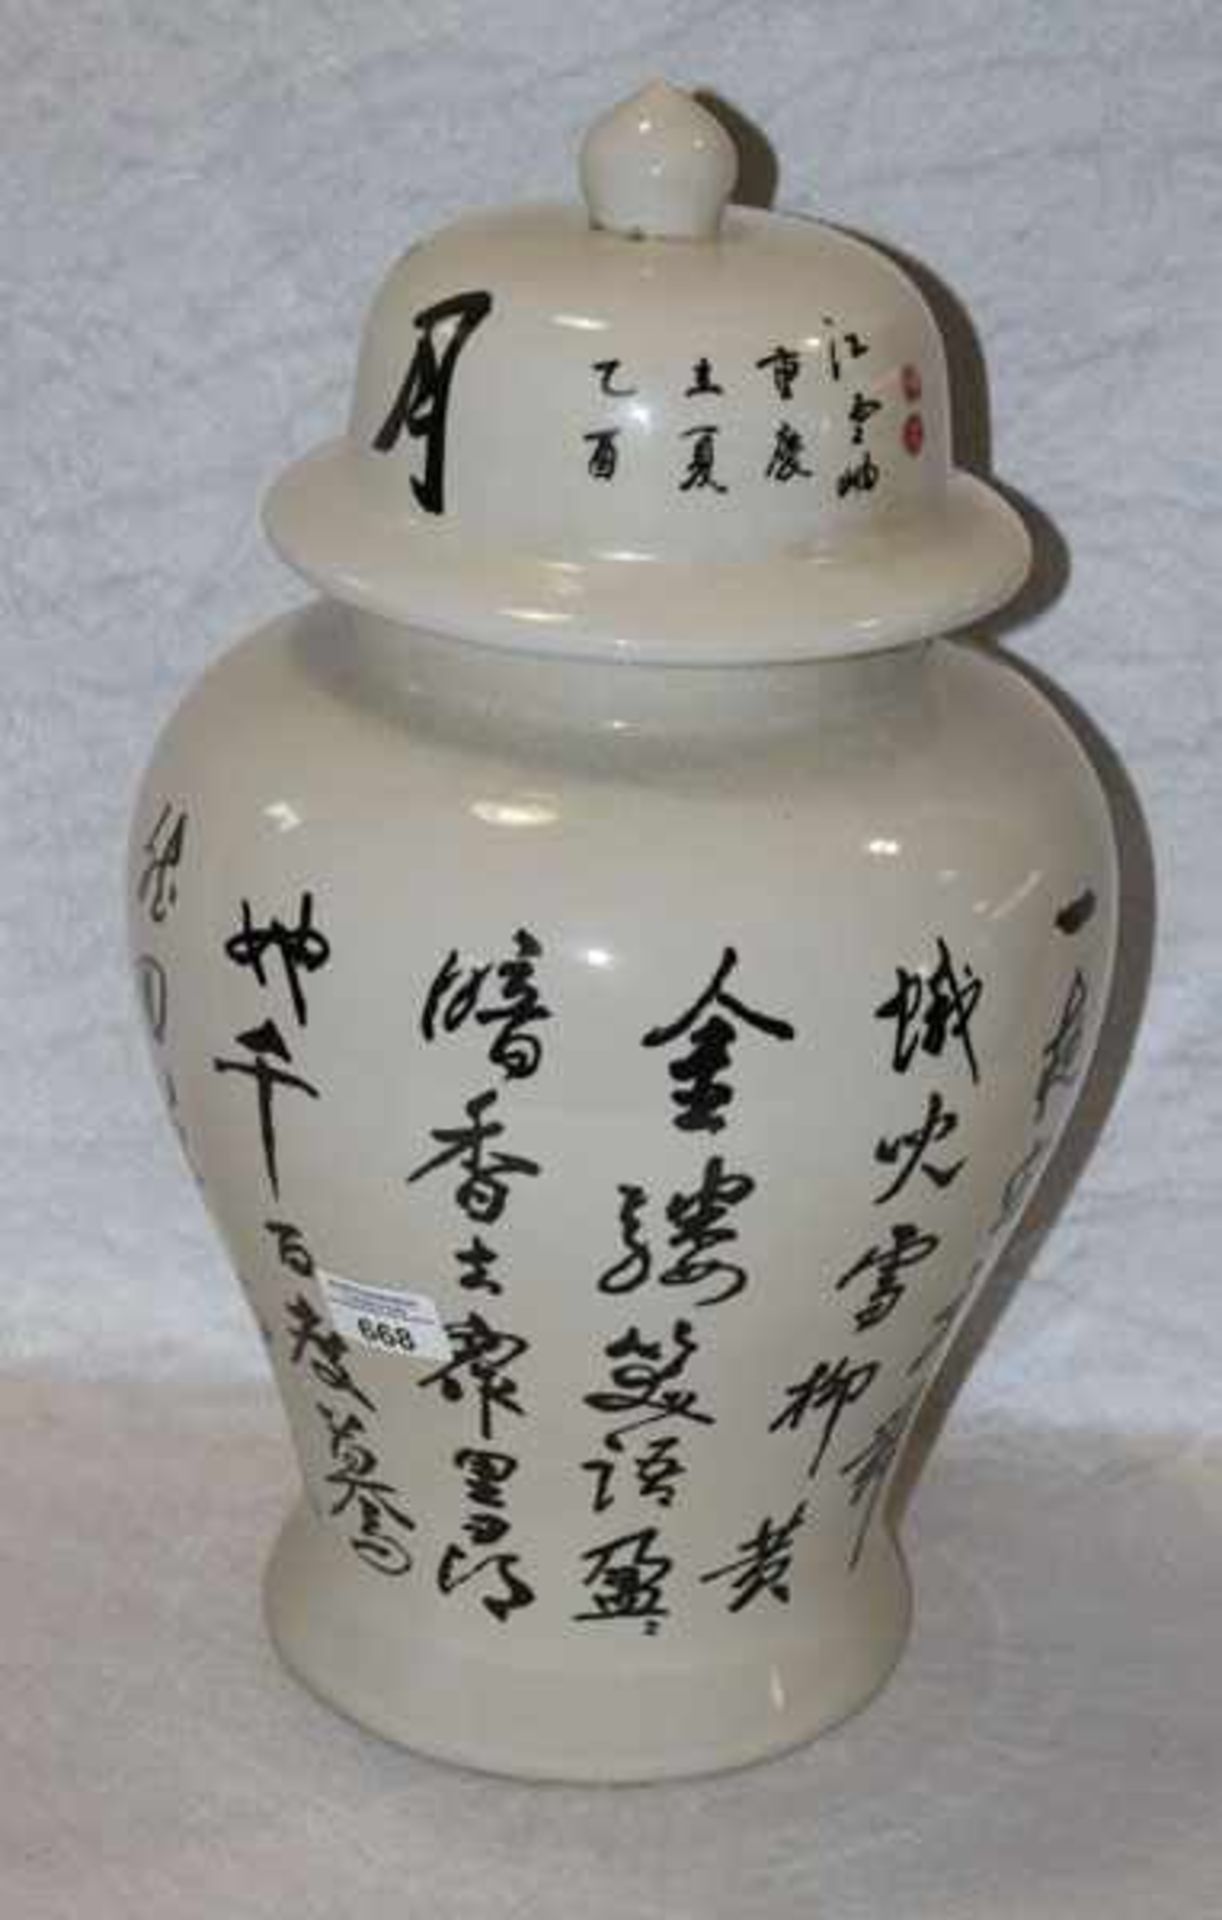 Keramik Deckelvase mit asiatischem Dekor und Schriftzeichen, H 45 cm, D 27 cm